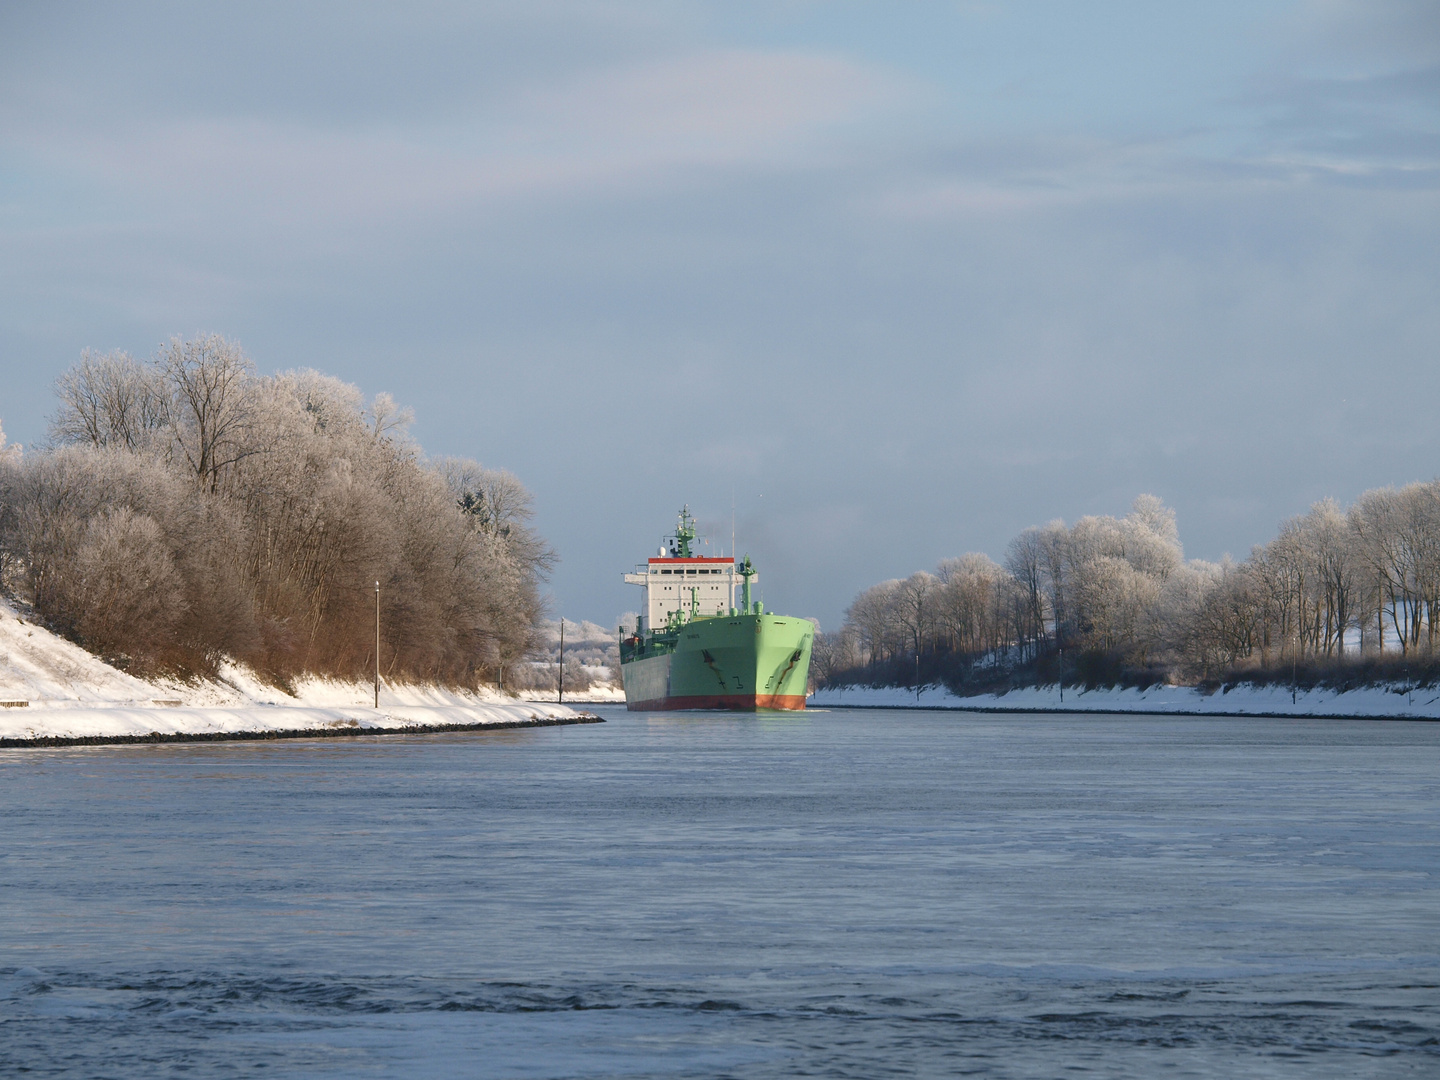 Nun kommt etwas Farbe auf den Nord-Ostsee-Kanal. Der Tanker BW HAVLYS in Sicht.